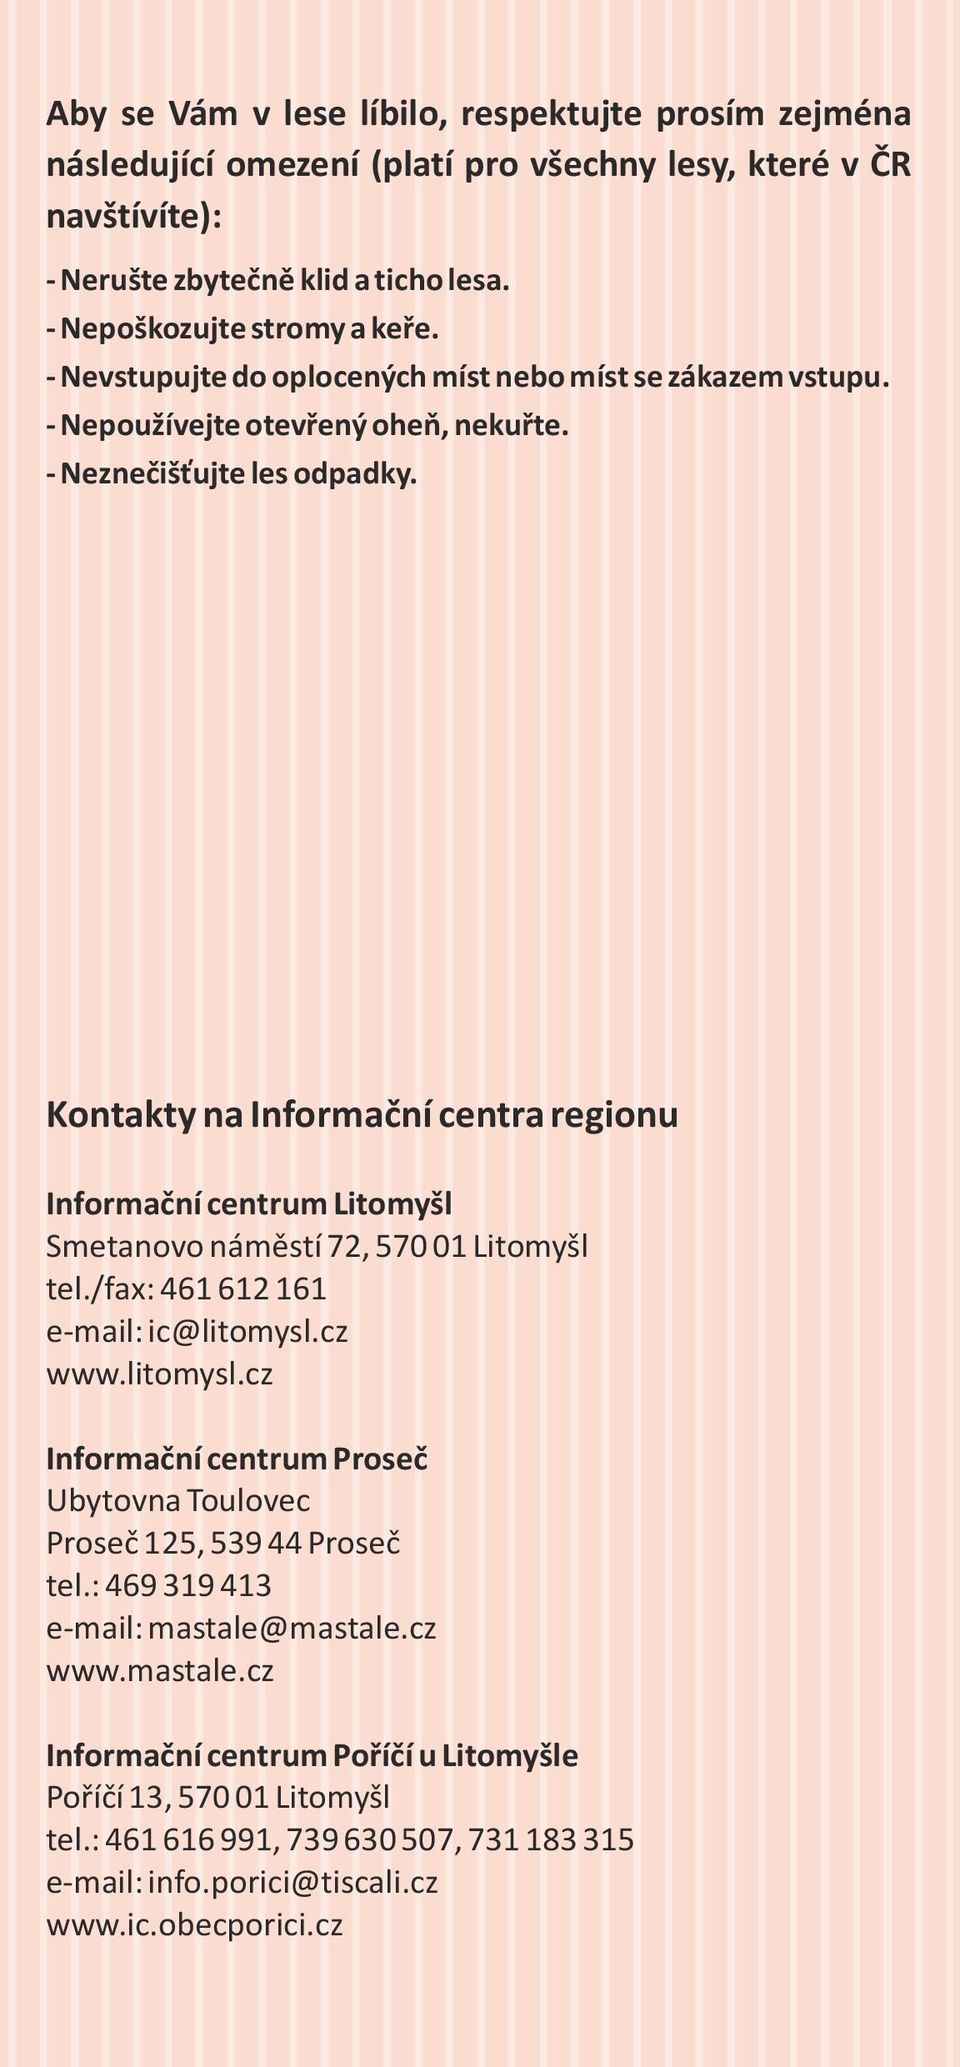 Kontakty na Informační centra regionu Informační centrum Litomyšl Smetanovo náměstí 72, 570 01 Litomyšl tel./fax: 461 612 161 e-mail: ic@litomysl.